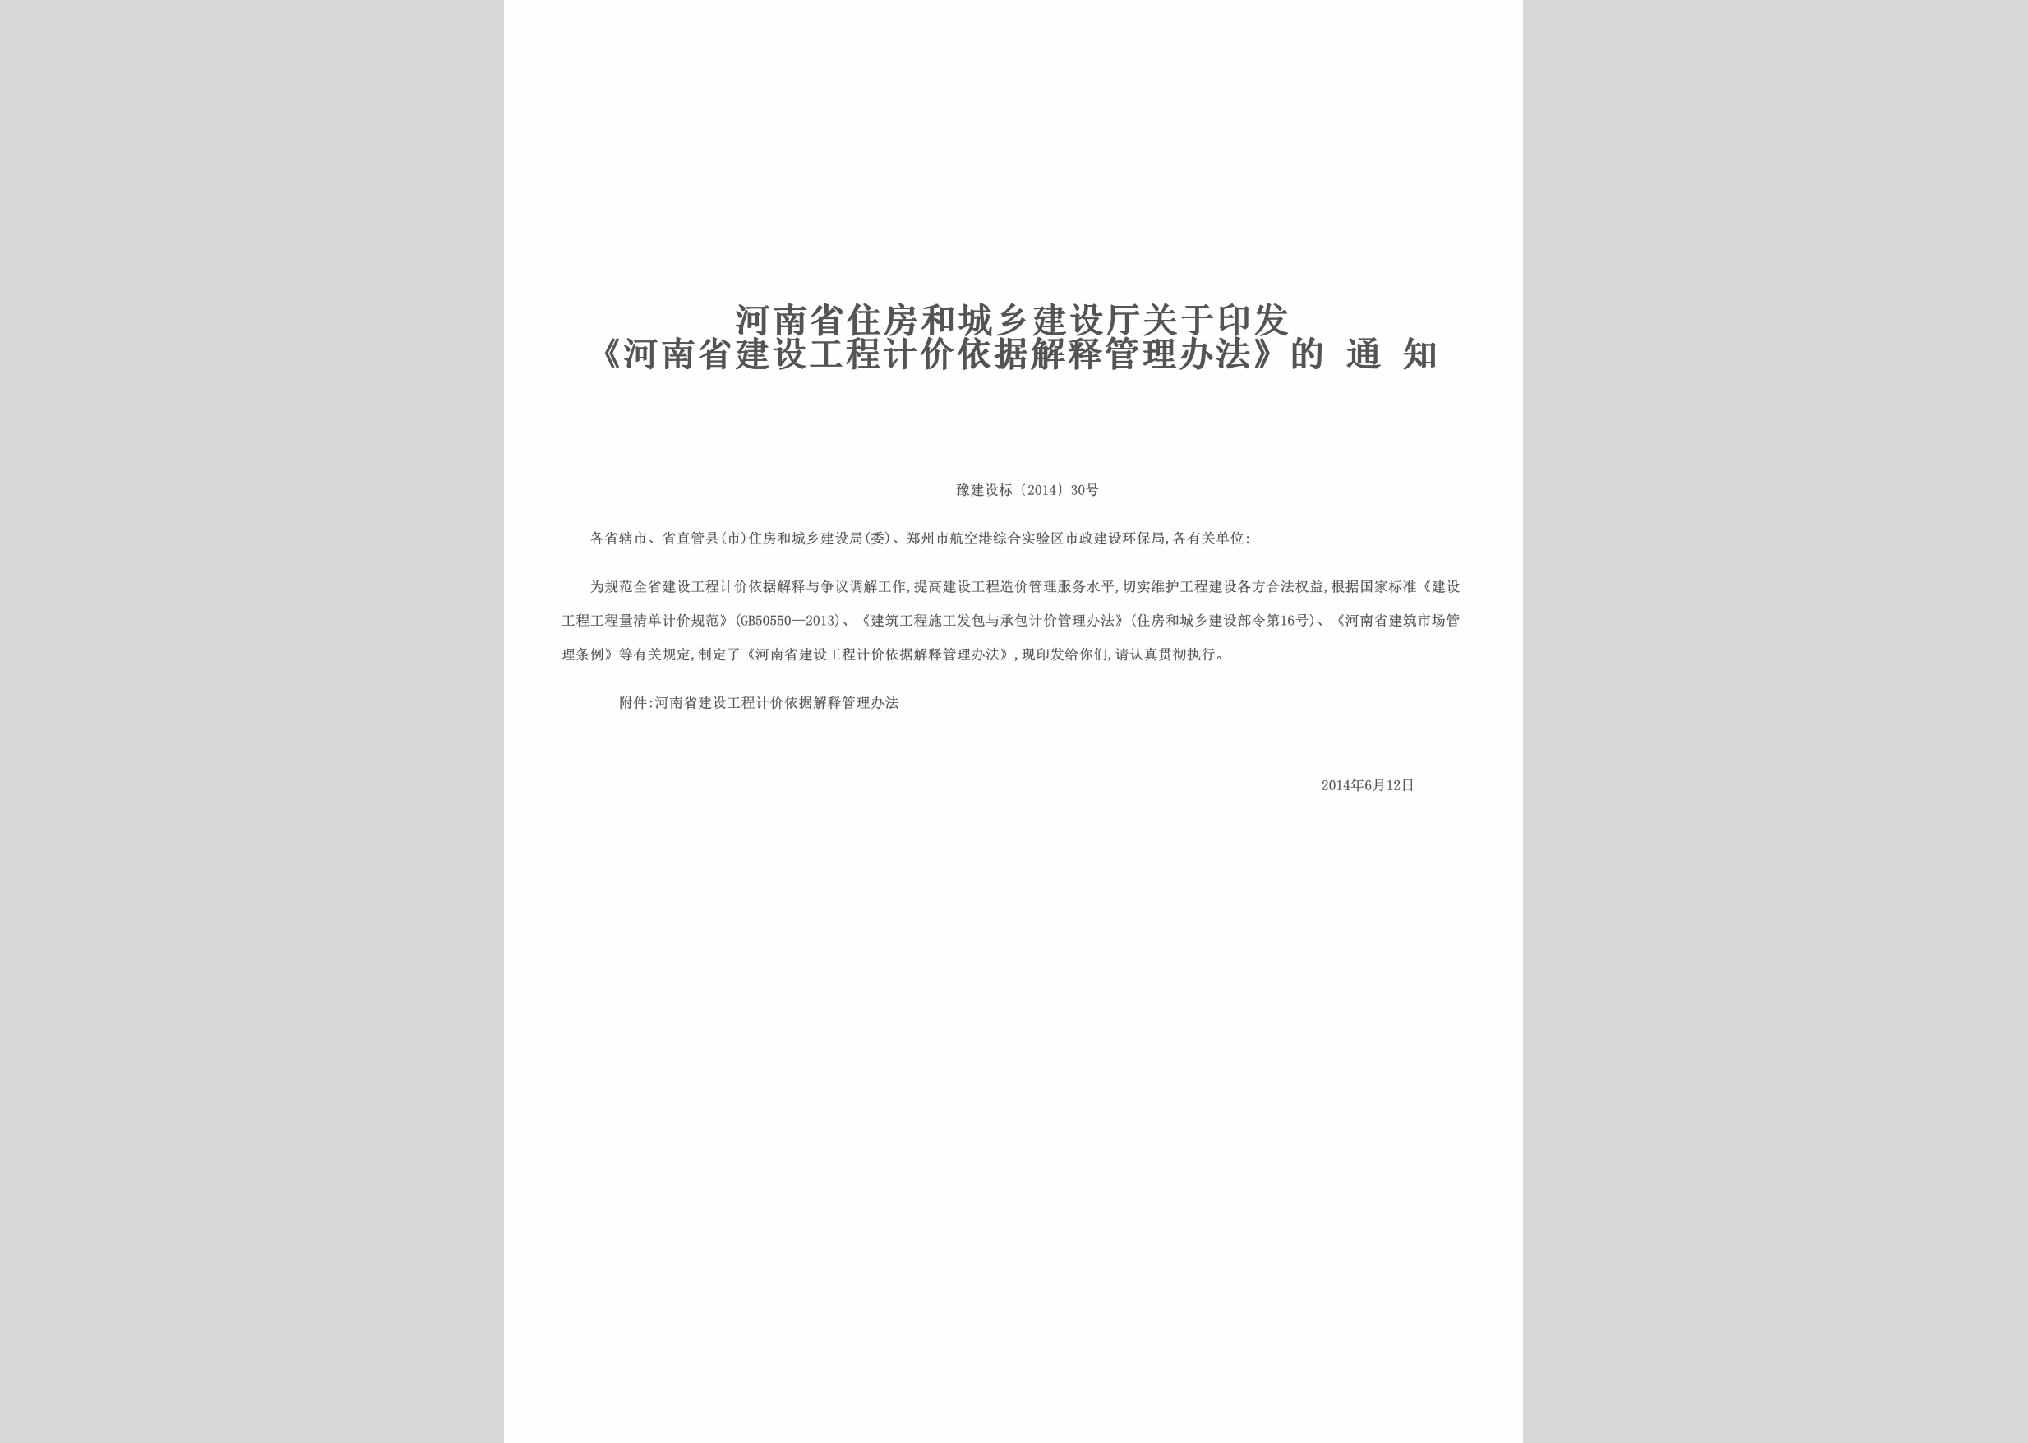 豫建设标[2014]30号：关于印发《河南省建设工程计价依据解释管理办法》的通知